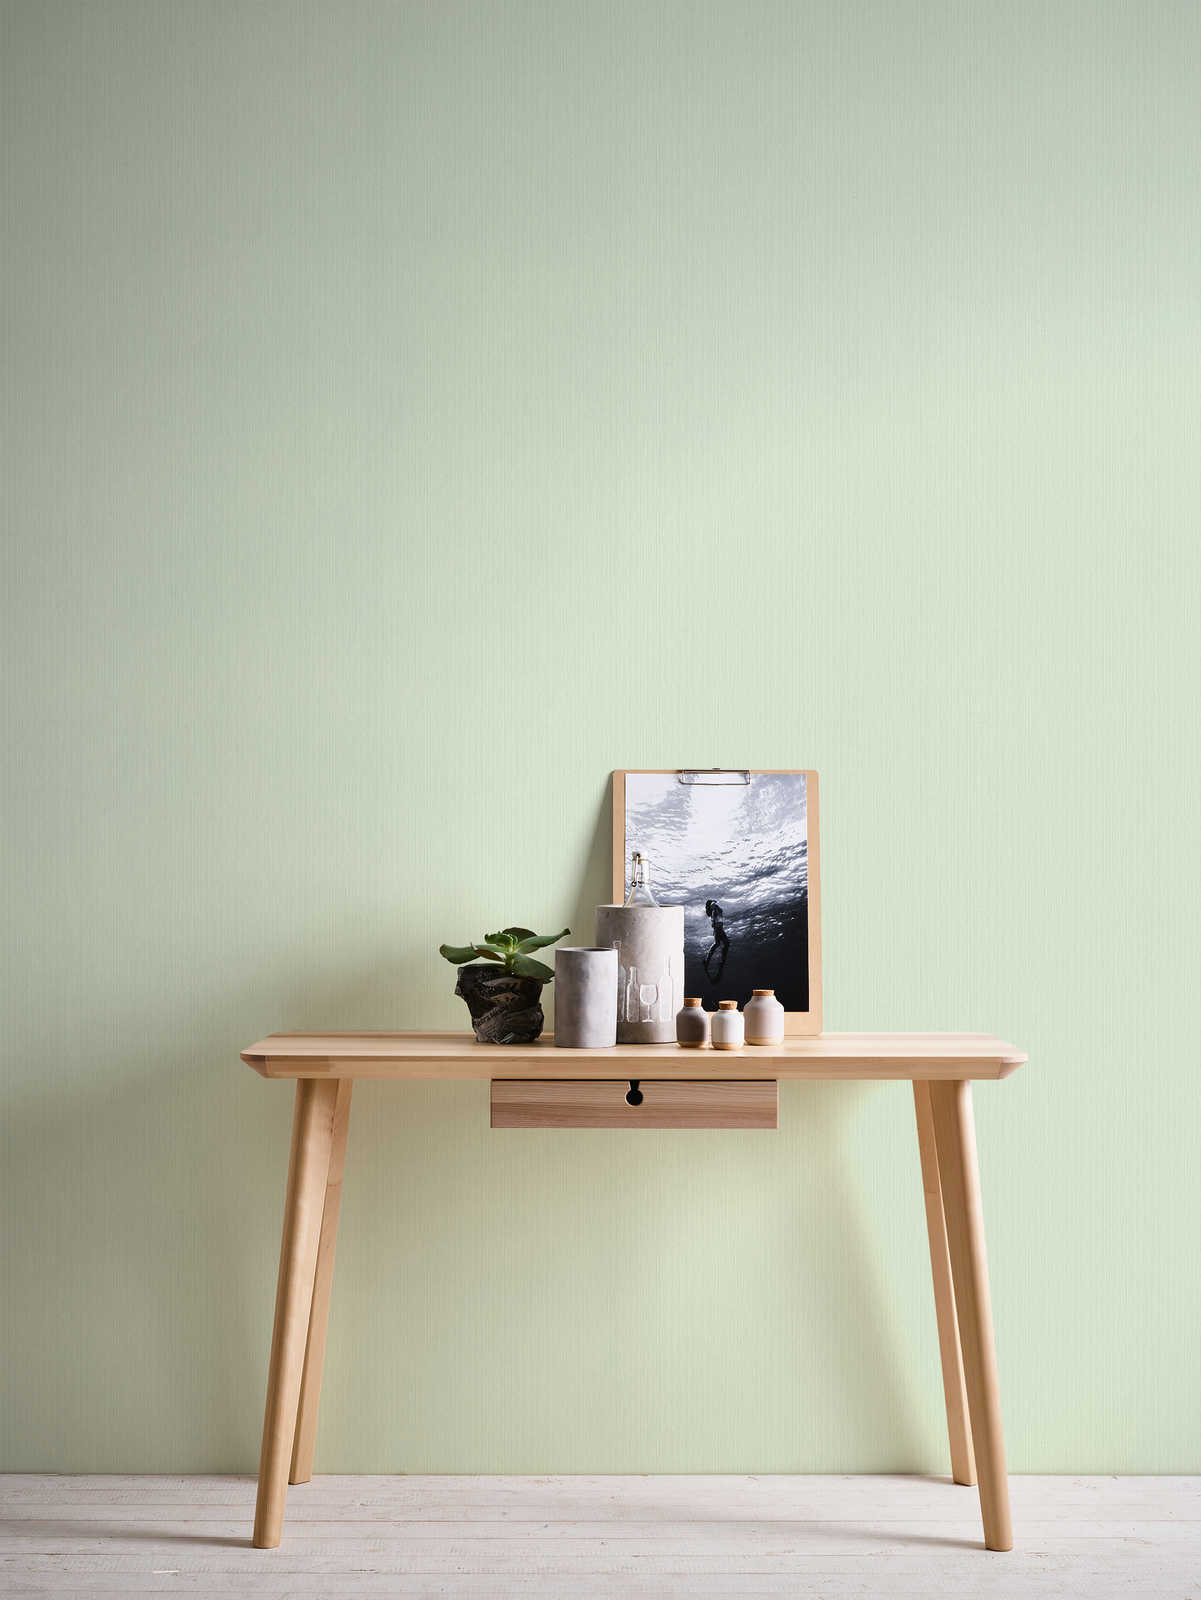             Einfarbige Tapete Hellgrün mit meliertem Textileffekt von MICHALSKY
        